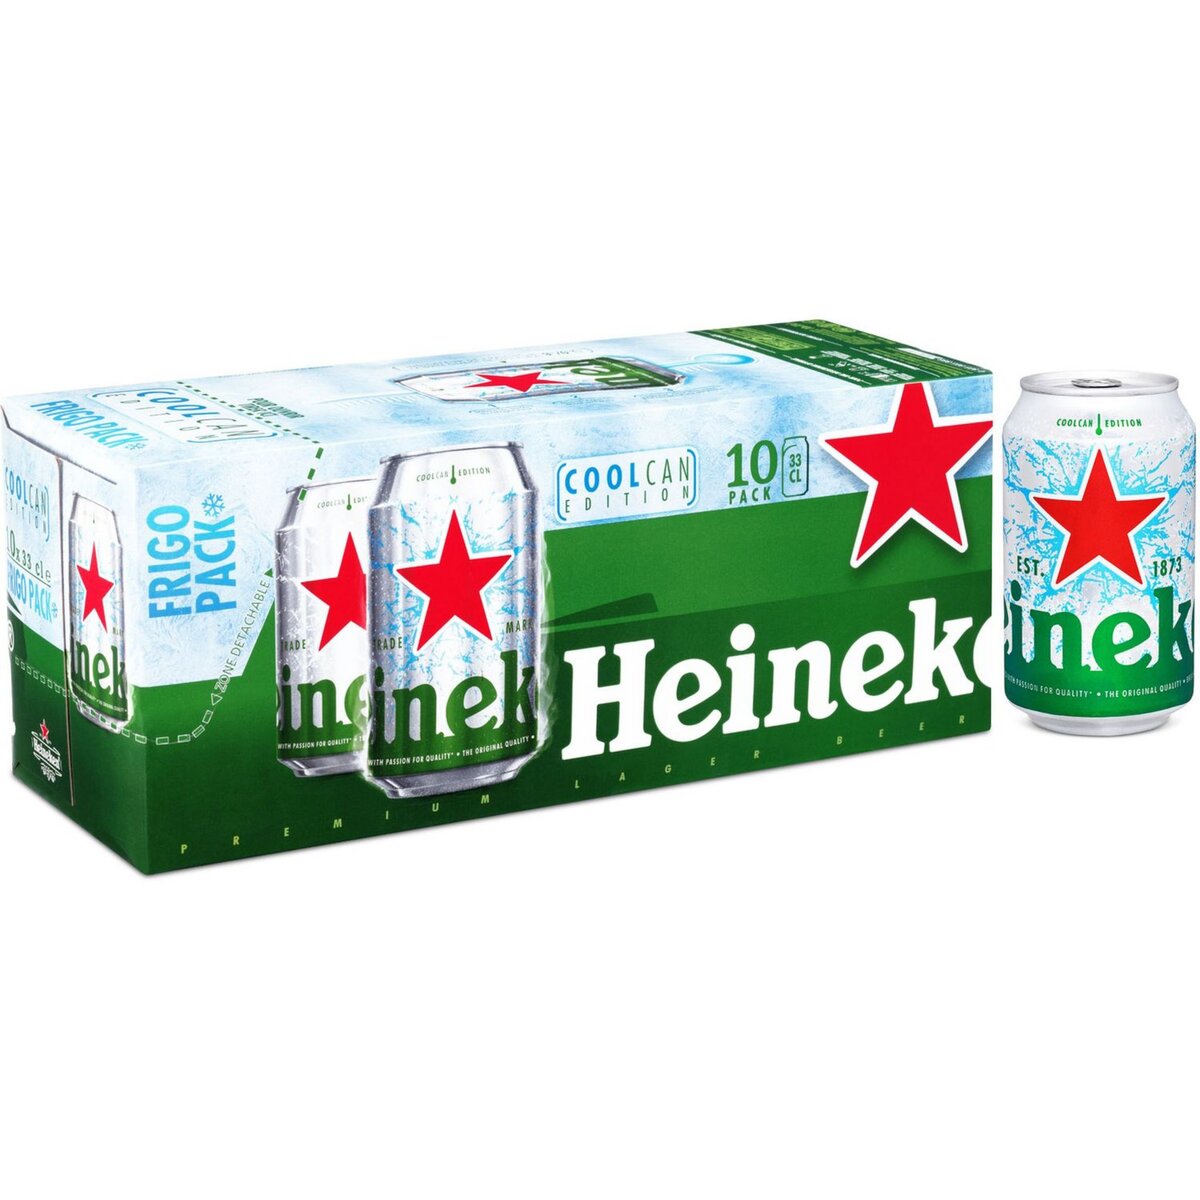 HEINEKEN Heineken bière blonde premium frigobox 5° canette 10x33cl